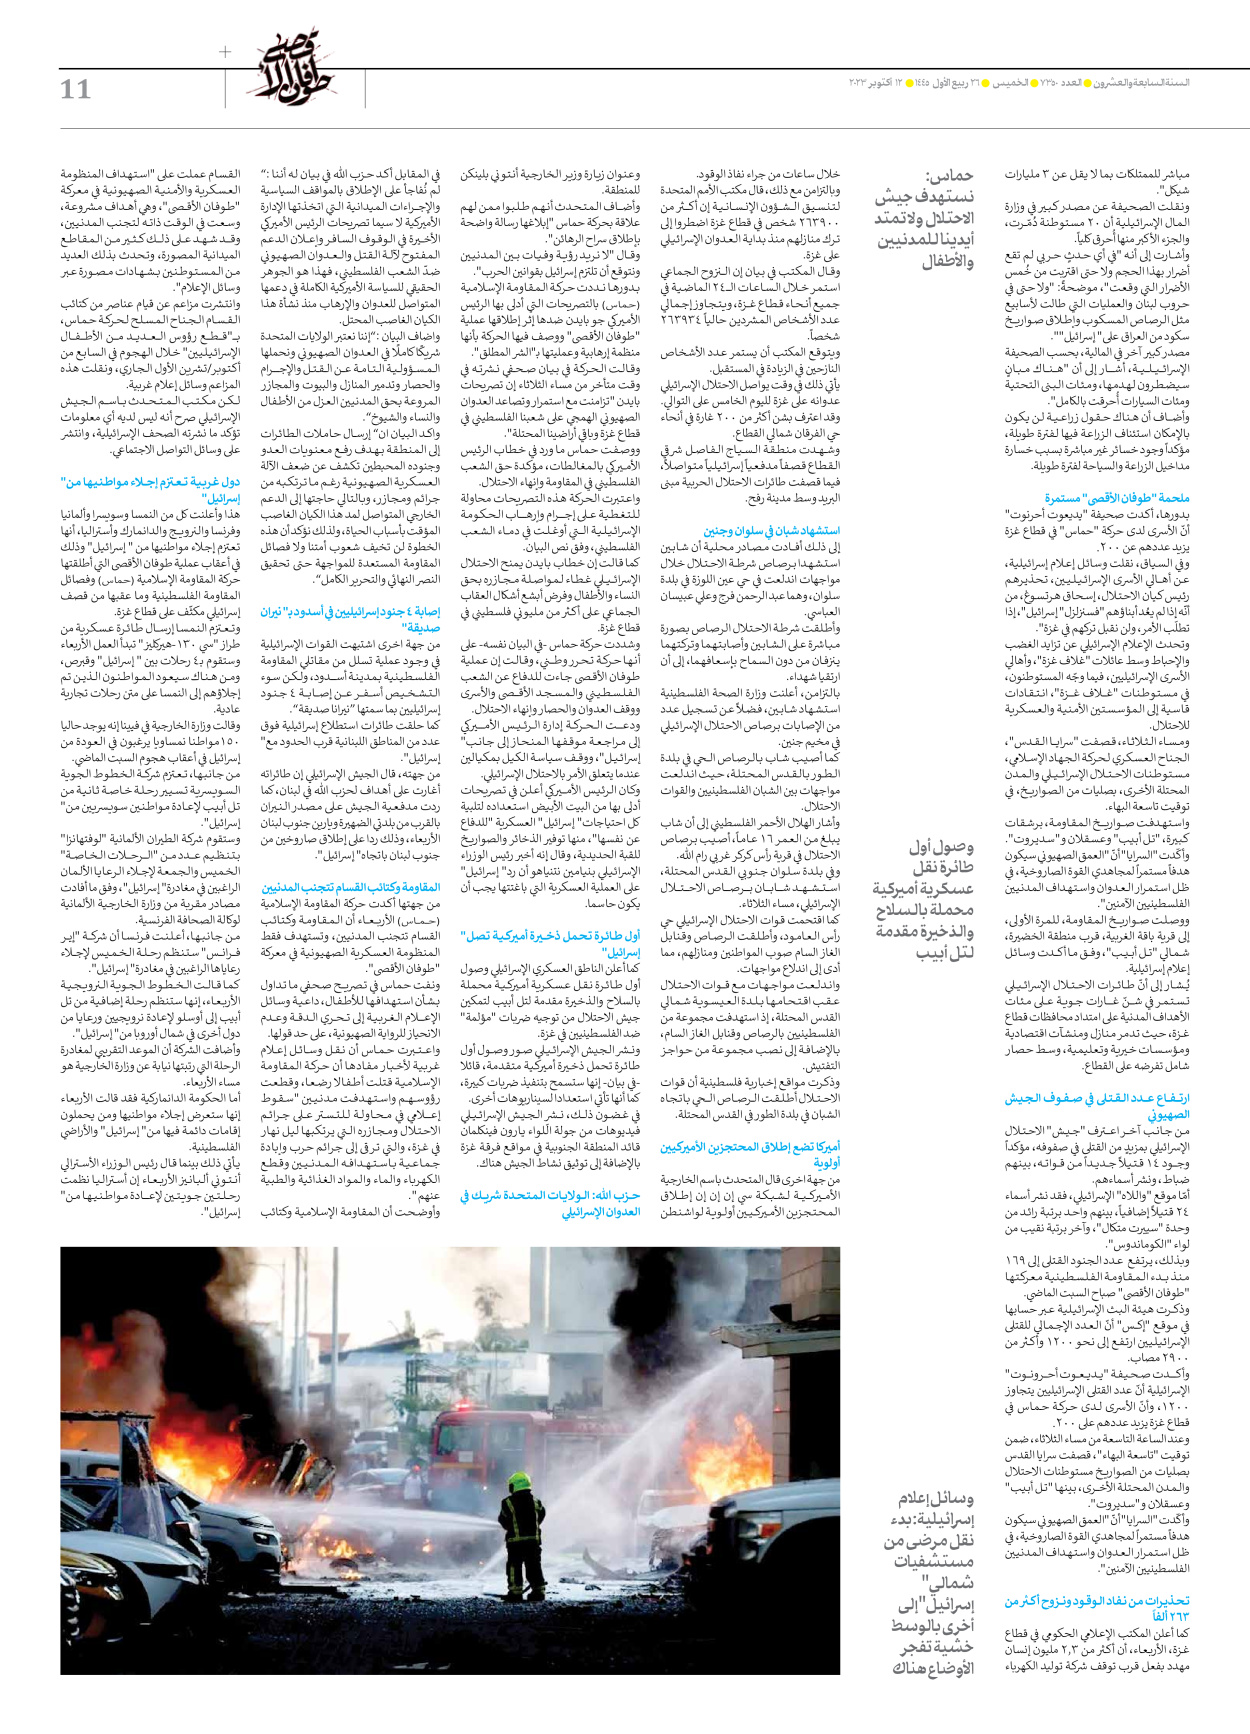 صحیفة ایران الدولیة الوفاق - العدد سبعة آلاف وثلاثمائة وخمسون - ١٢ أكتوبر ٢٠٢٣ - الصفحة ۱۱